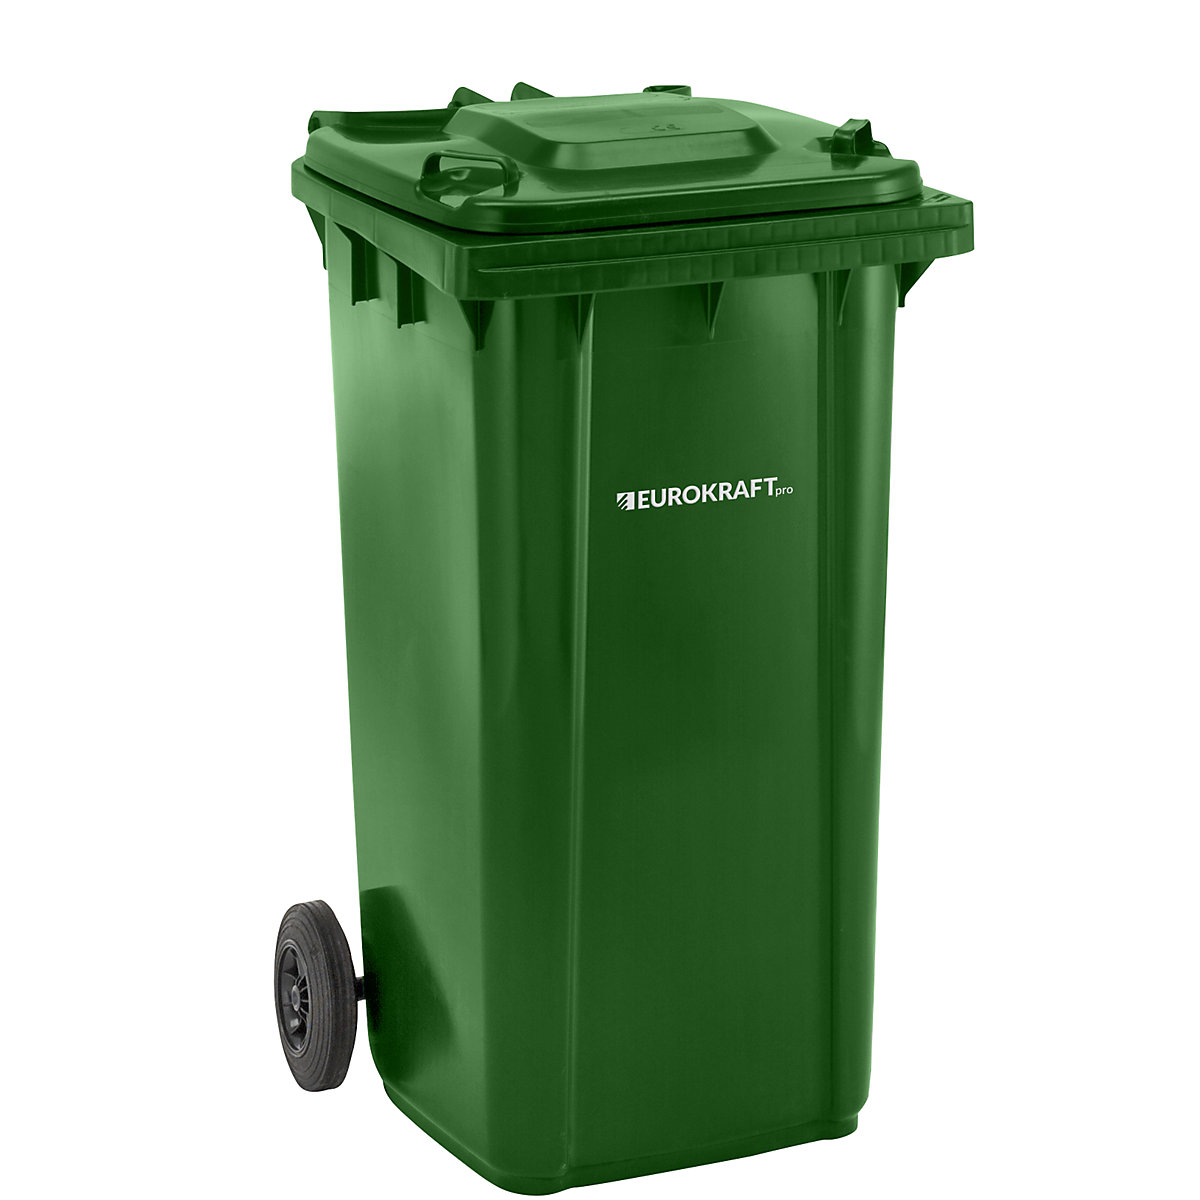 EUROKRAFTpro – Plastic waste bin, DIN EN 840, capacity 240 l, WxHxD 580 x 1100 x 740 mm, green